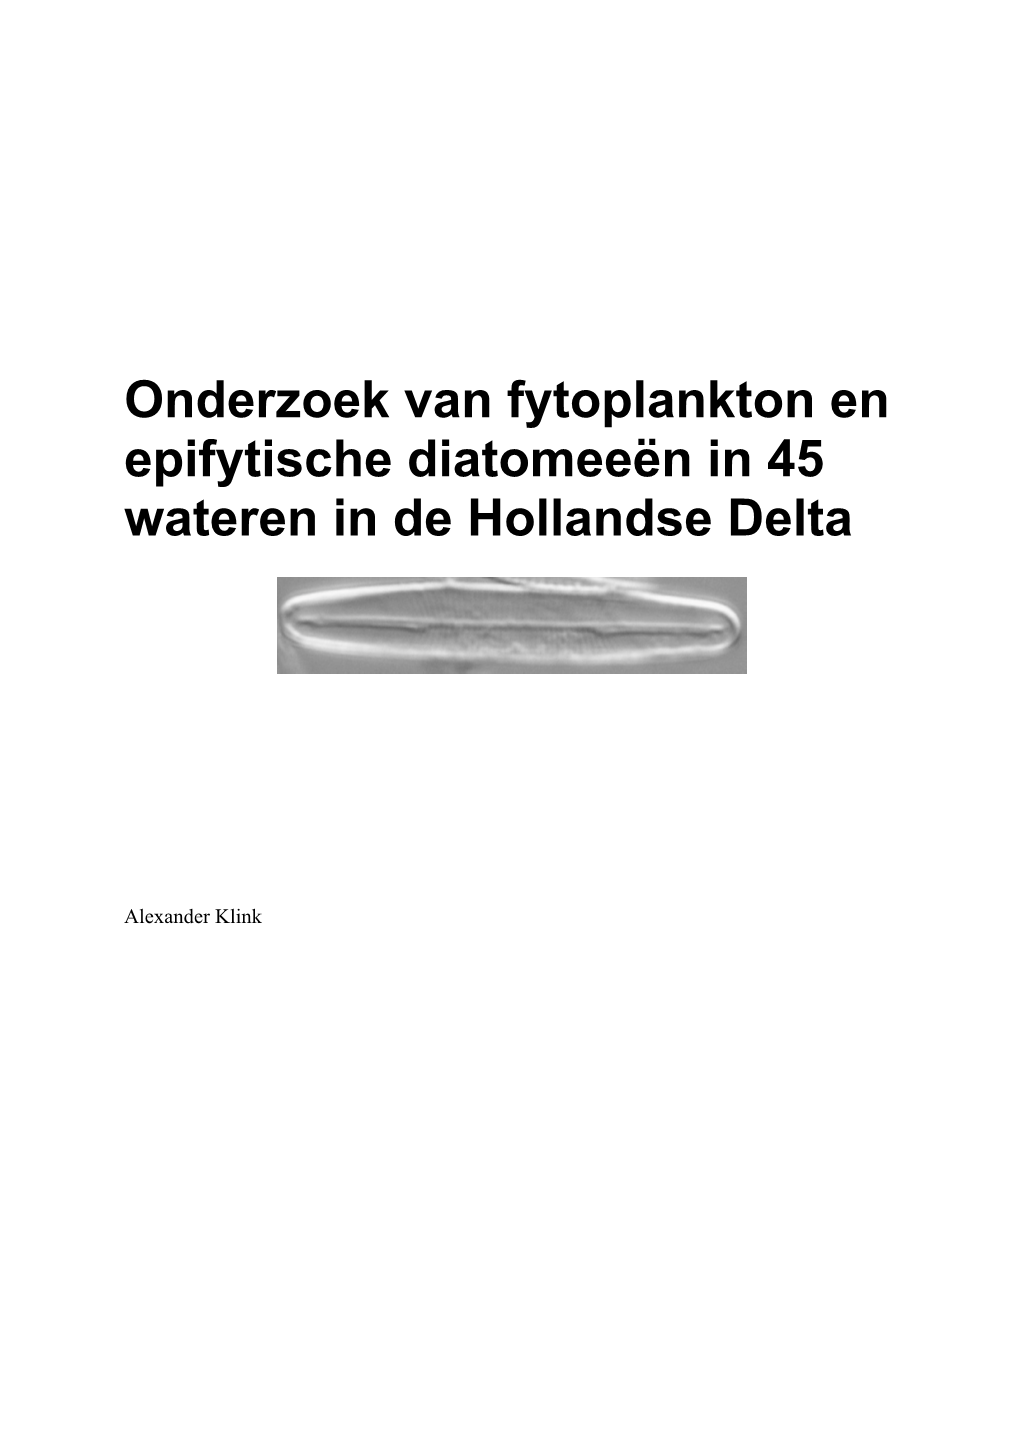 Onderzoek Van Fytoplankton En Epifytische Diatomeeën in 45 Wateren in De Hollandse Delta